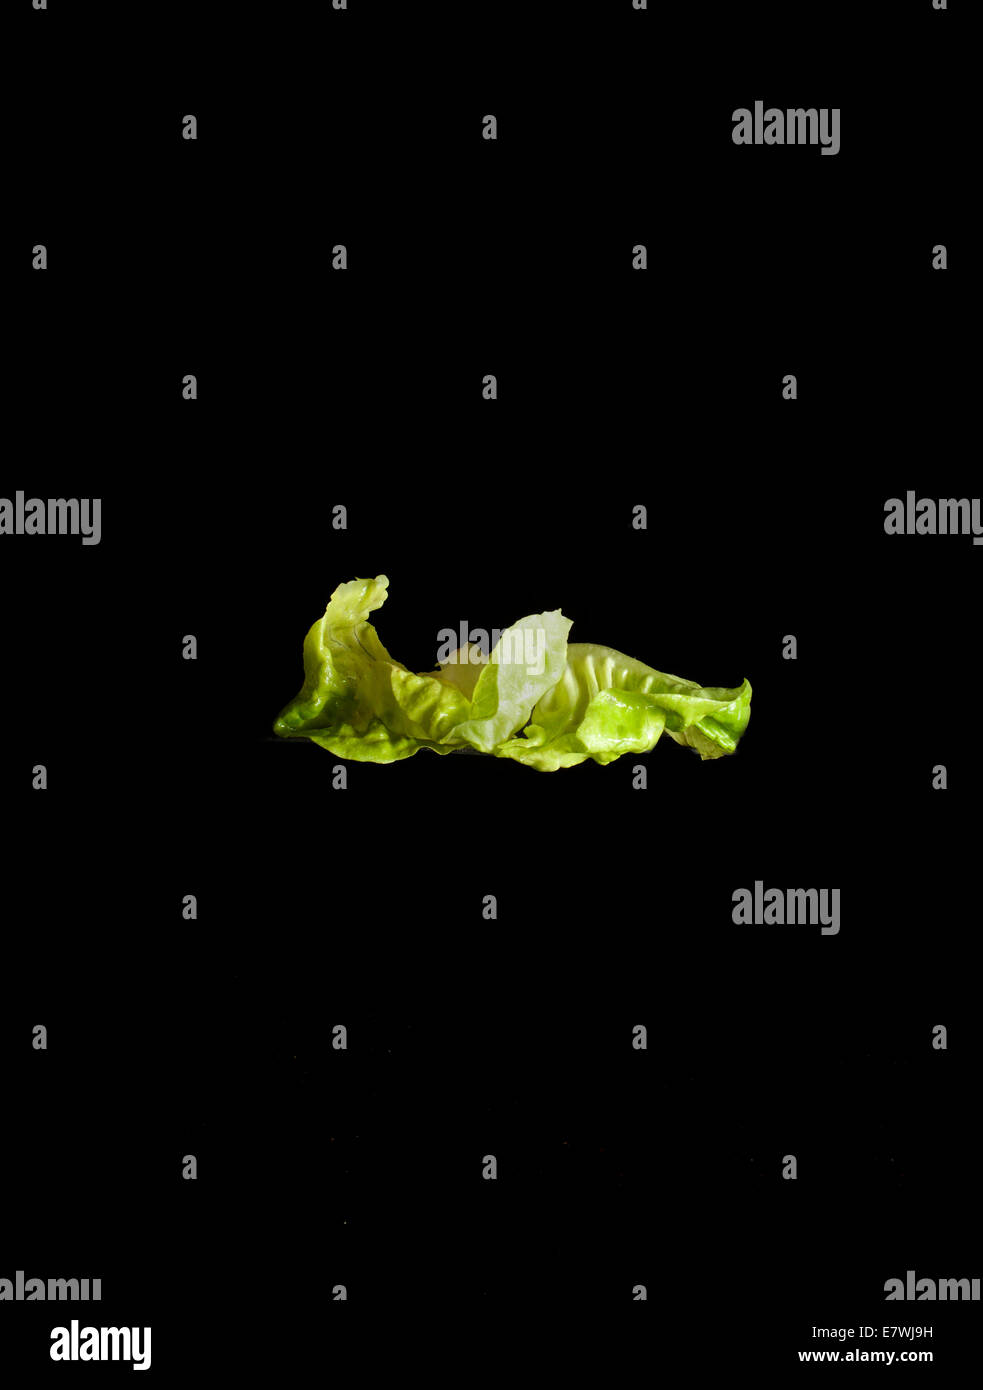 Floating lettuce leaves Stock Photo